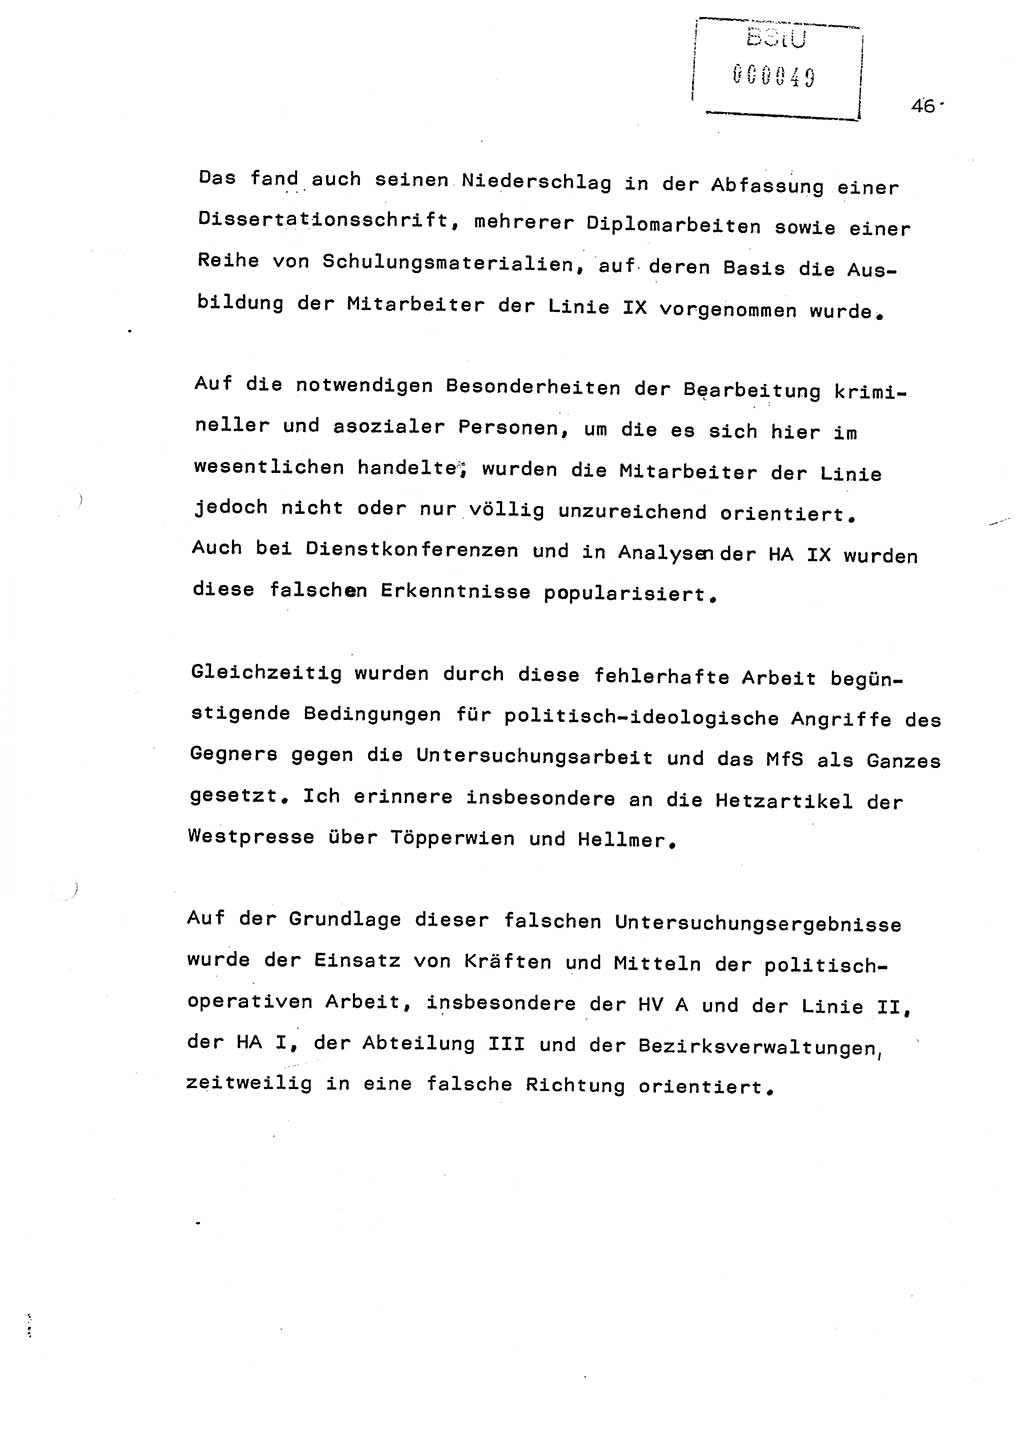 Referat (Generaloberst Erich Mielke) auf der Zentralen Dienstkonferenz am 24.5.1979 [Ministerium für Staatssicherheit (MfS), Deutsche Demokratische Republik (DDR), Der Minister], Berlin 1979, Seite 46 (Ref. DK DDR MfS Min. /79 1979, S. 46)